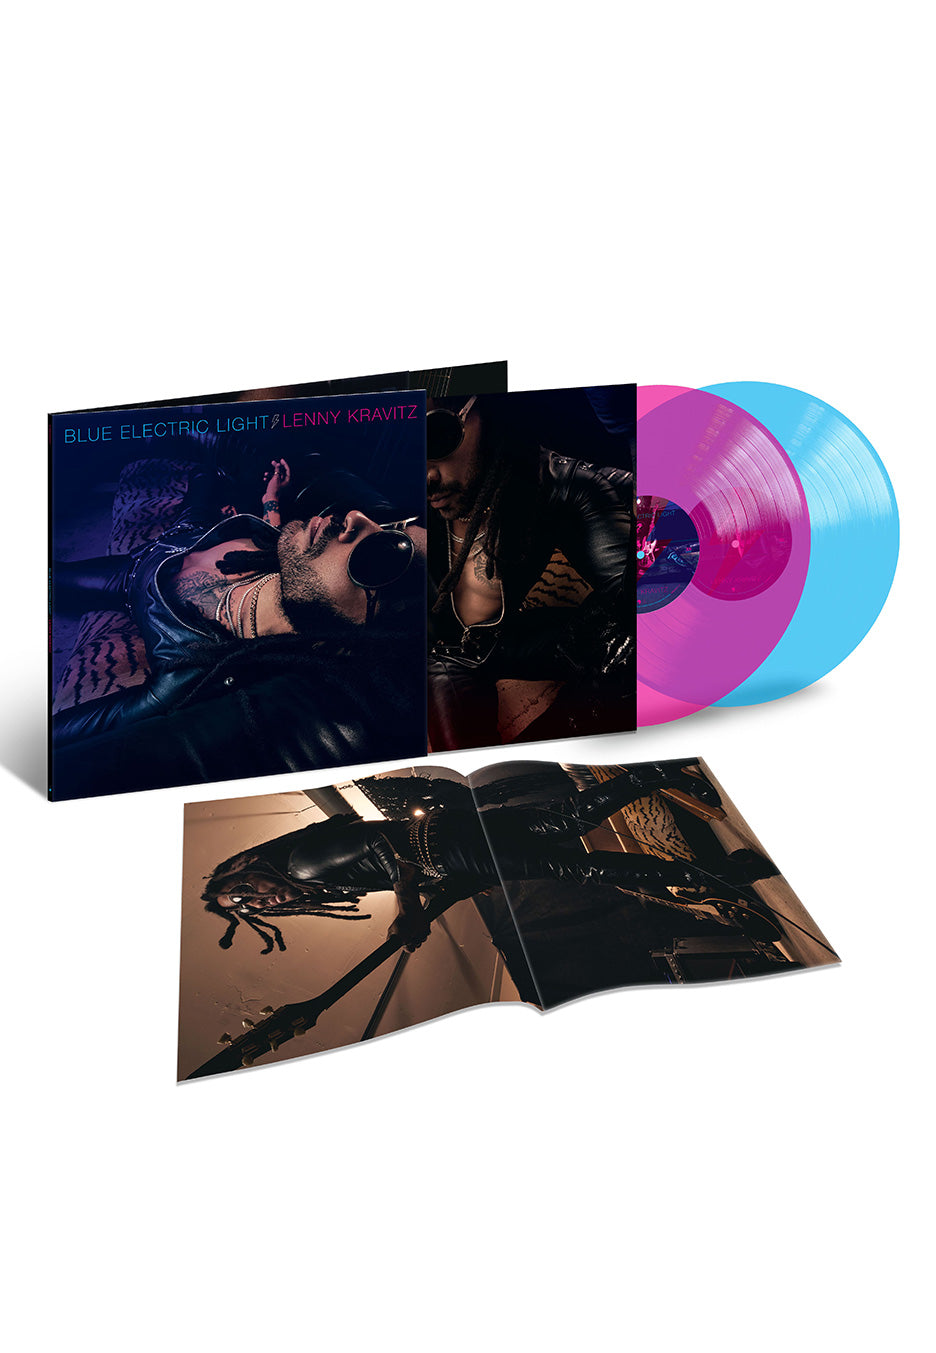 Lenny Kravitz - Blue Electric Light SIGNED Ltd. Pink & Blue - Colored Vinyl